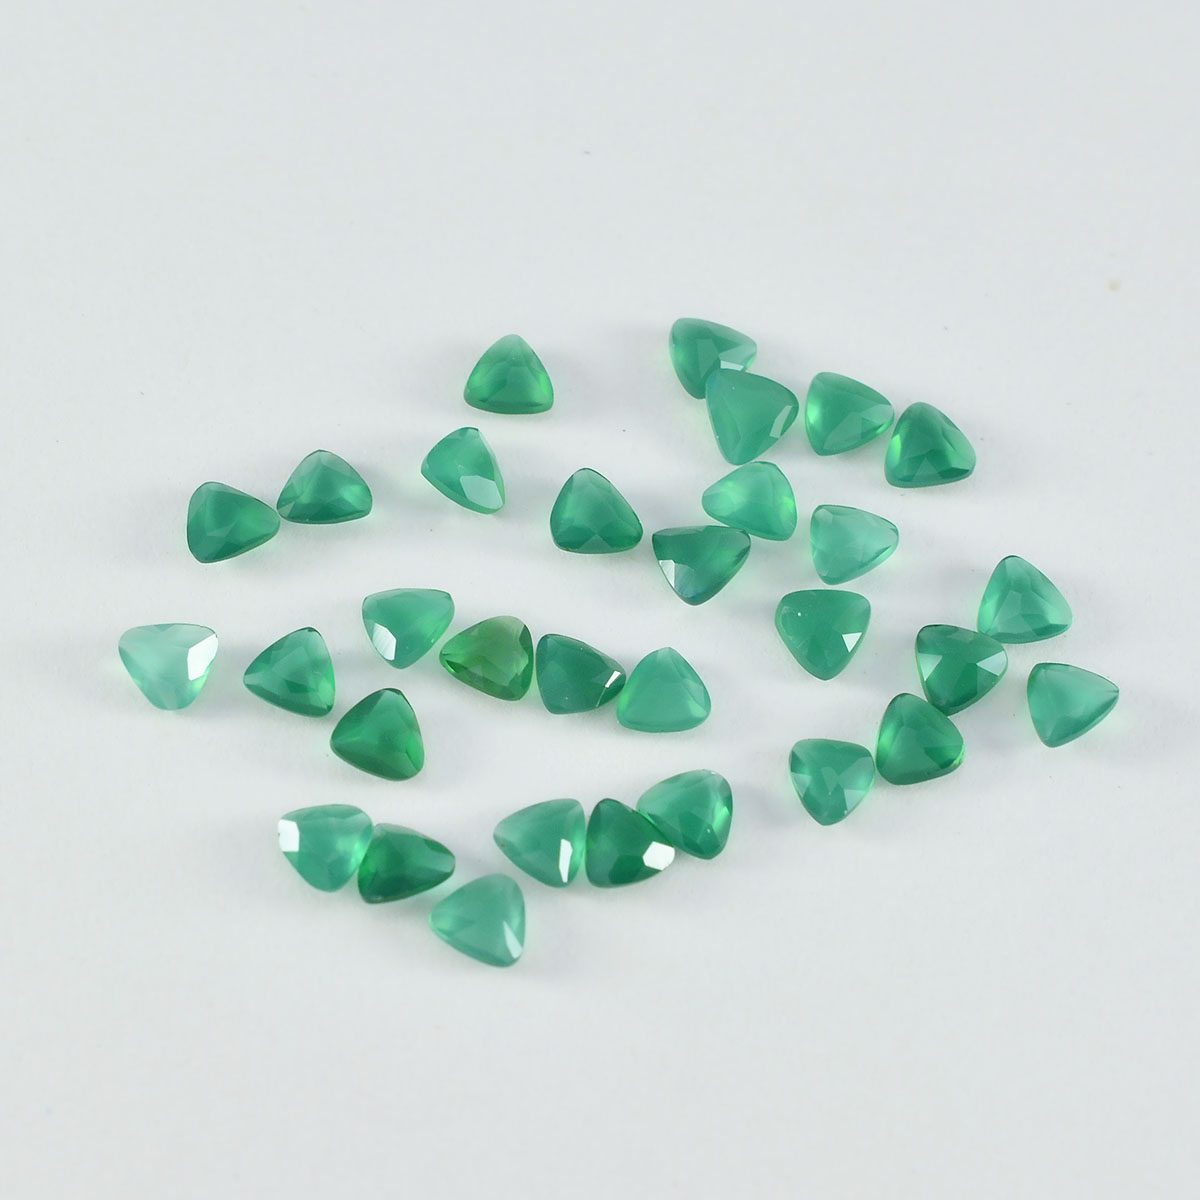 Riyogems 1 pièce d'onyx vert véritable à facettes 4x4mm en forme de trillion, pierres précieuses en vrac de belle qualité